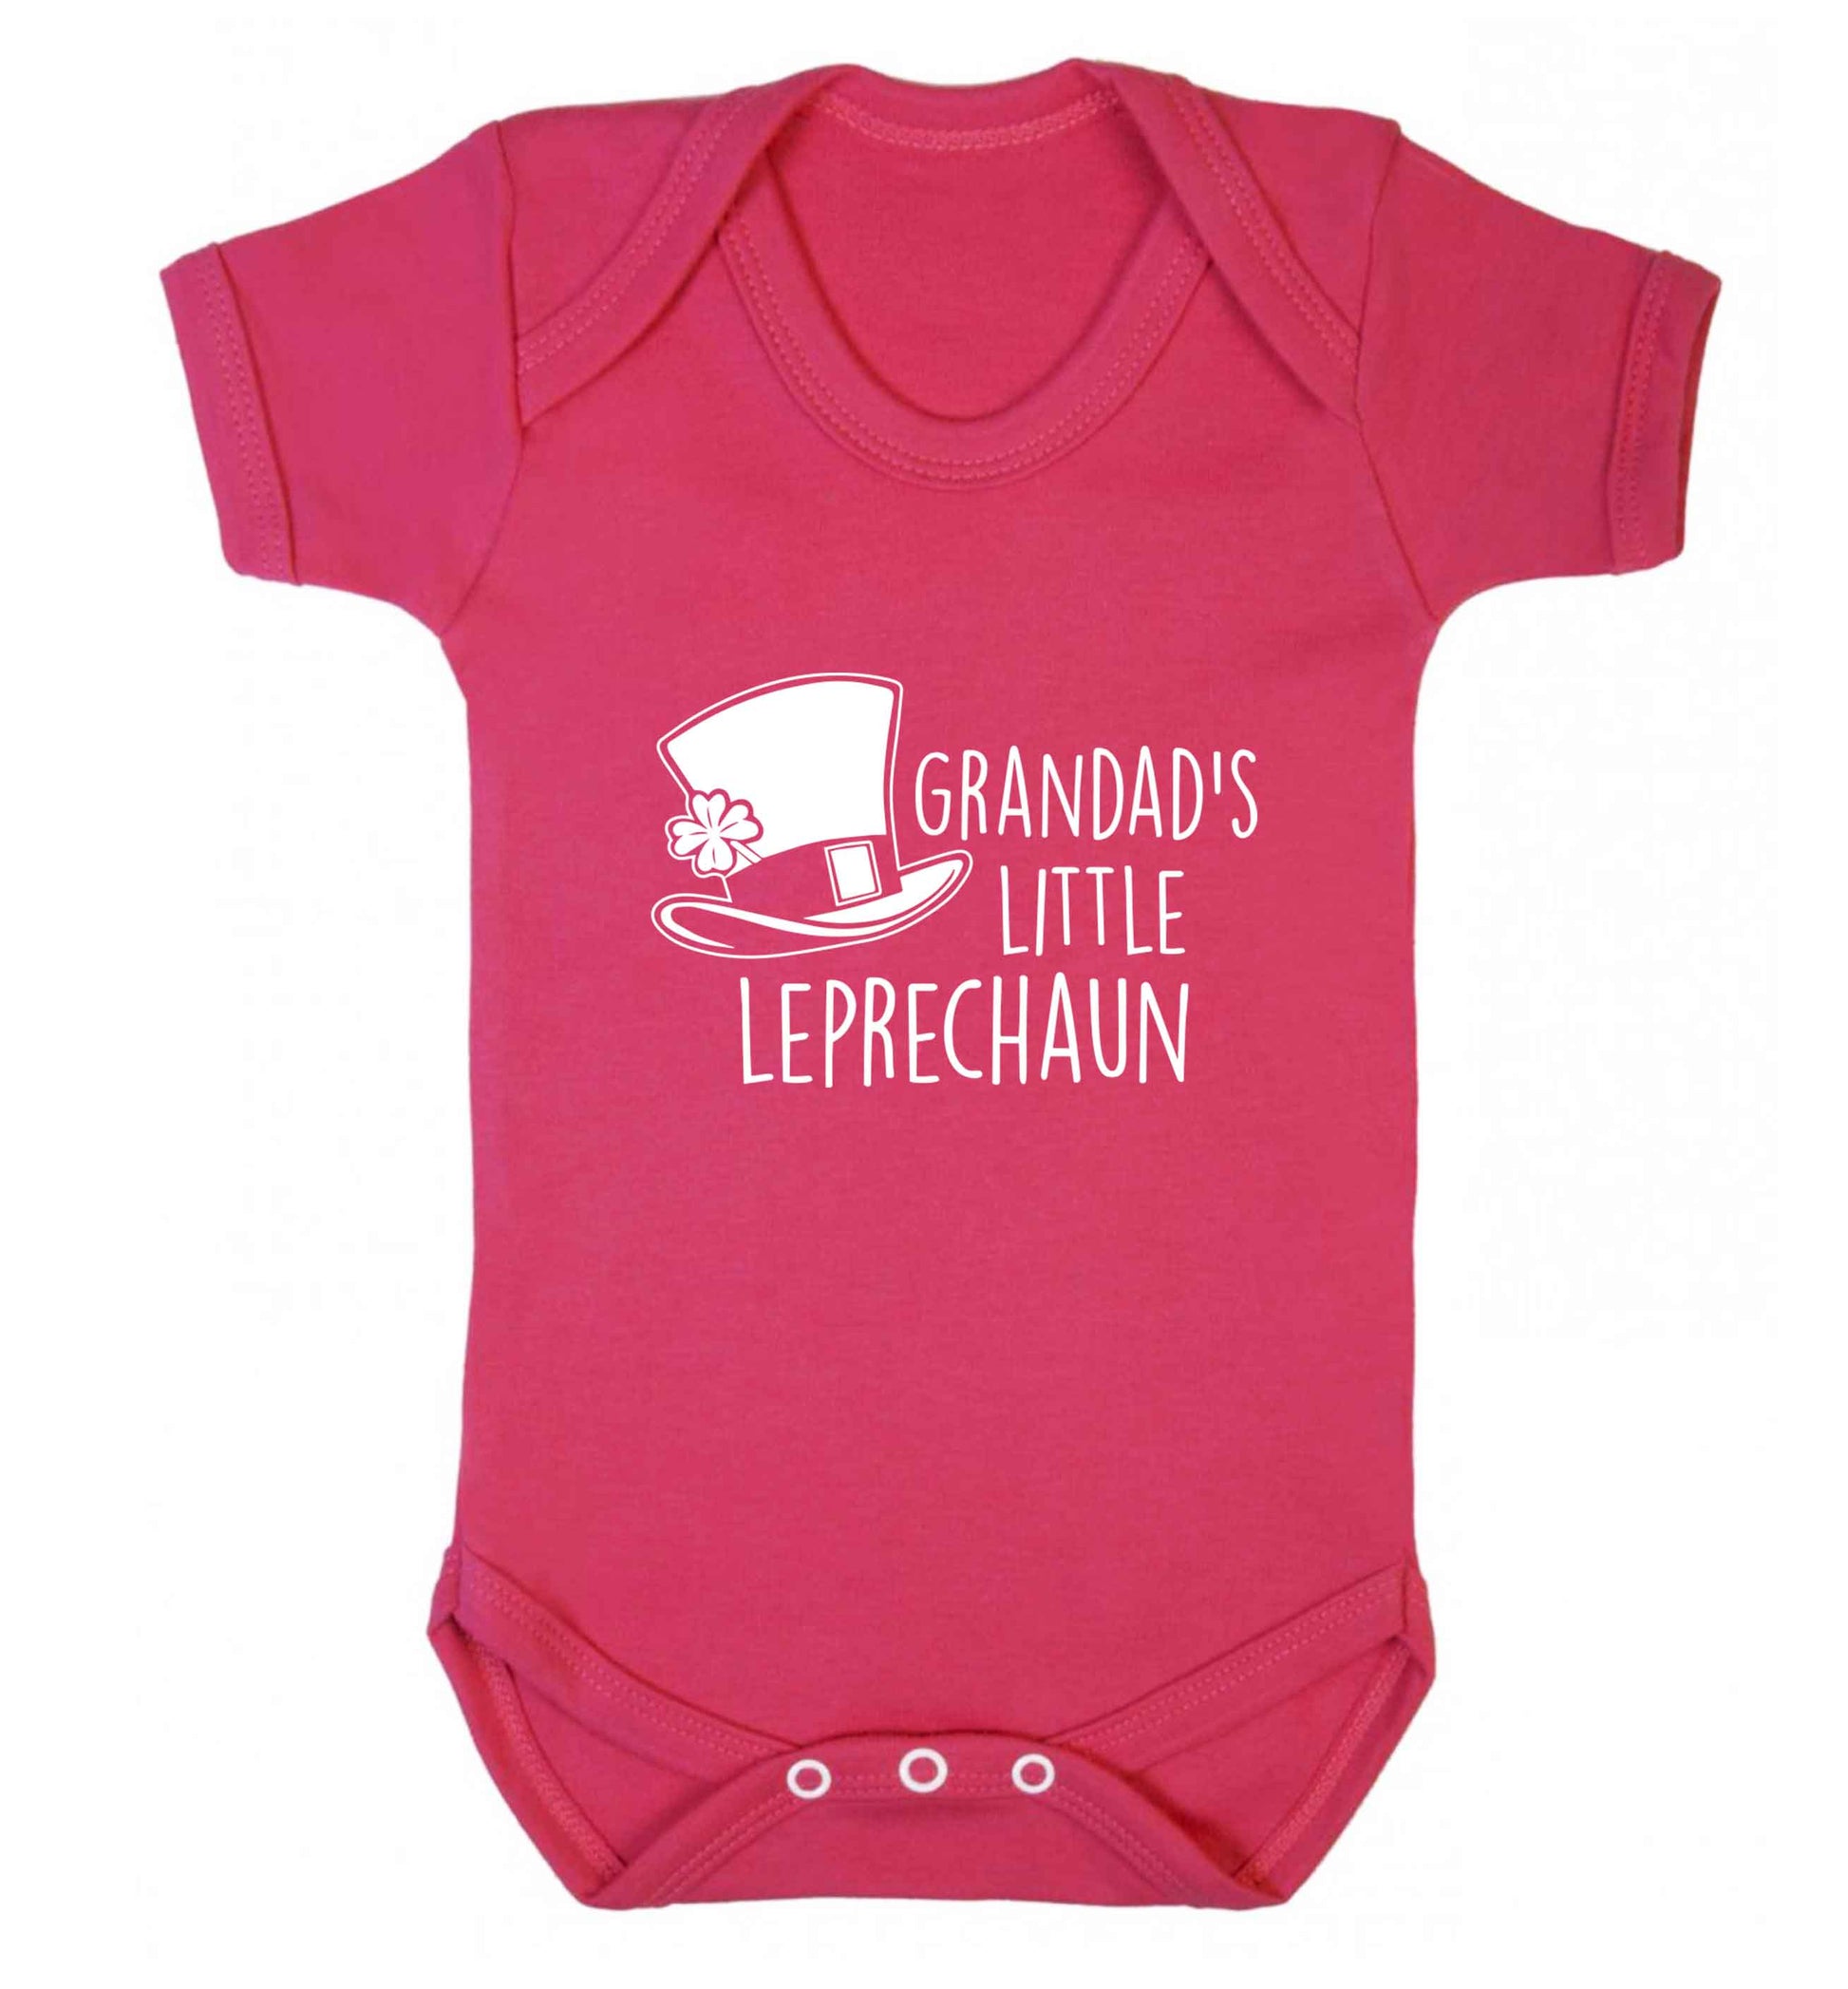 Grandad's little leprechaun baby vest dark pink 18-24 months